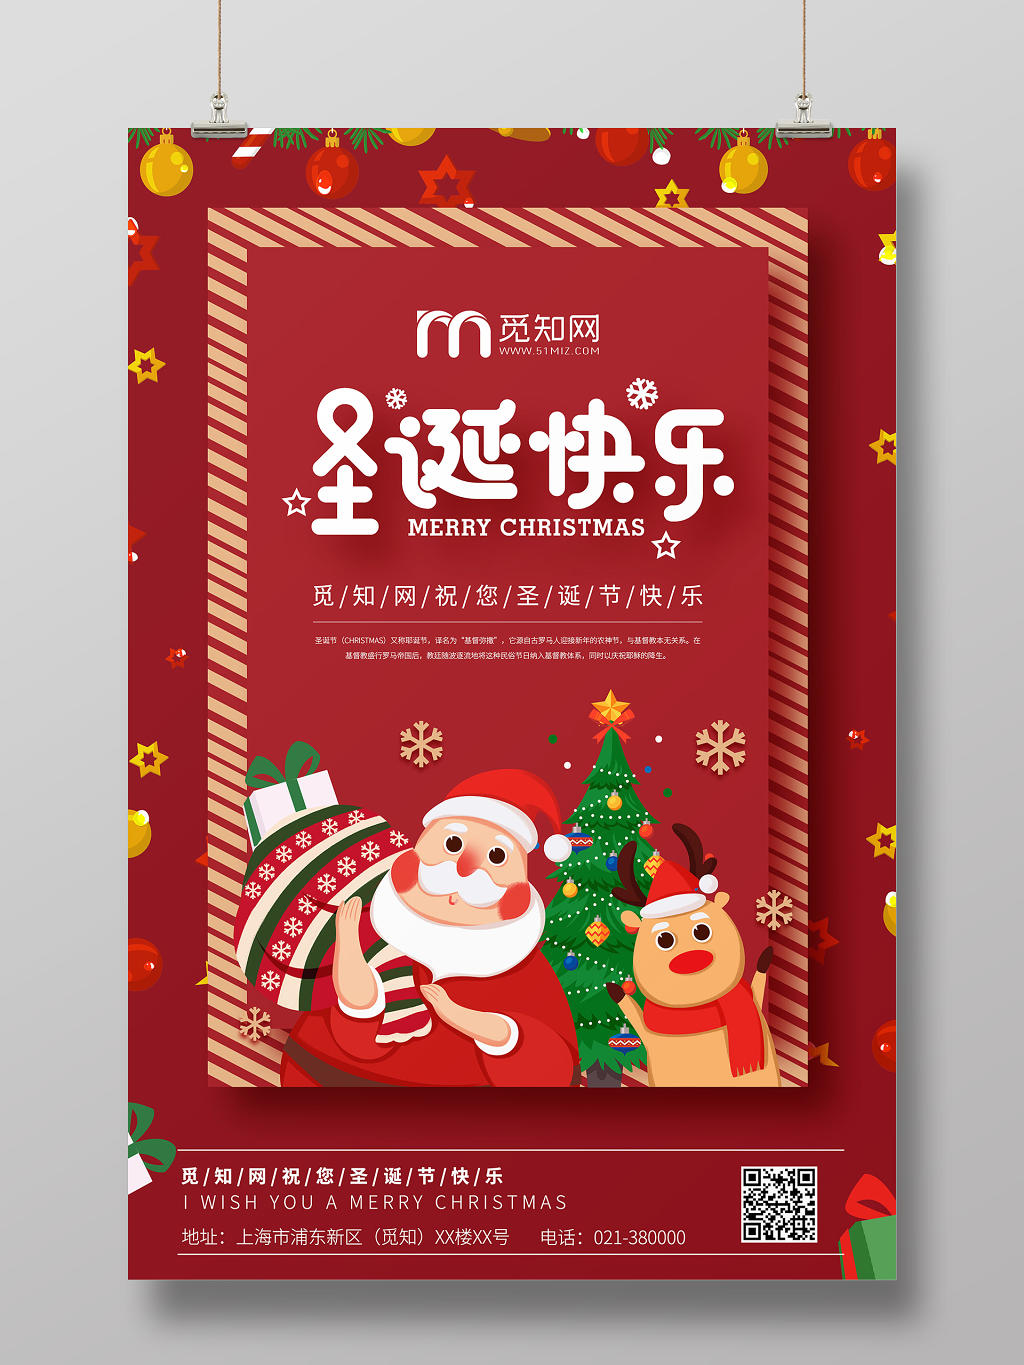 商用红色喜庆圣诞节海报设计